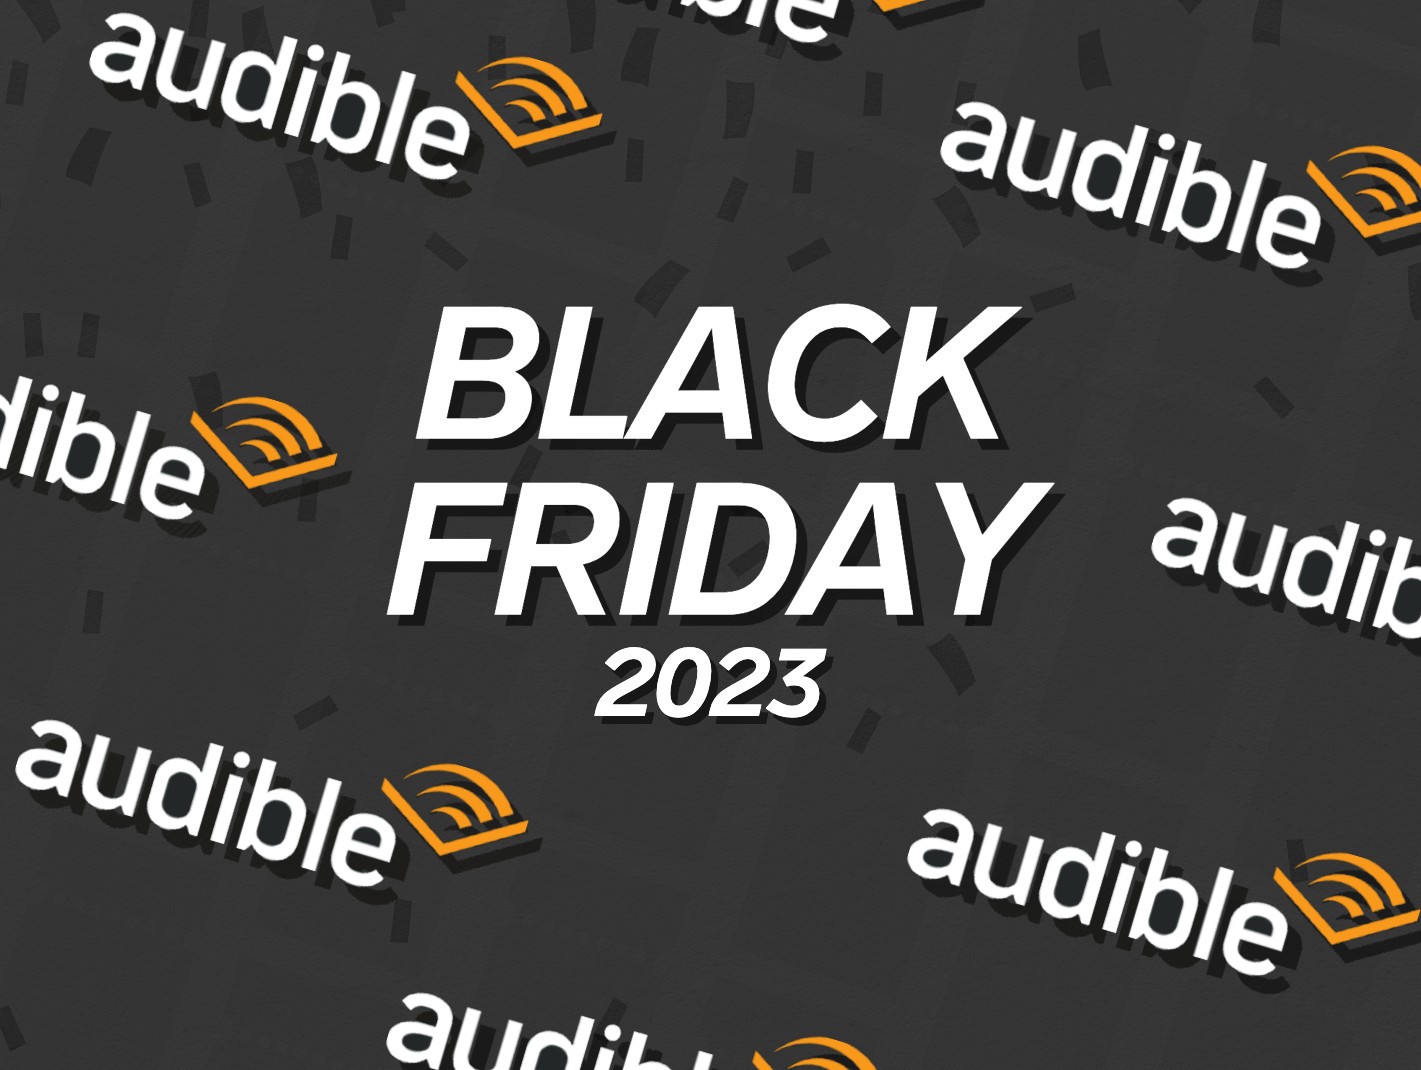 Audible-Angebot zum Black Friday 2023: Drei Monate kostenlos hören.